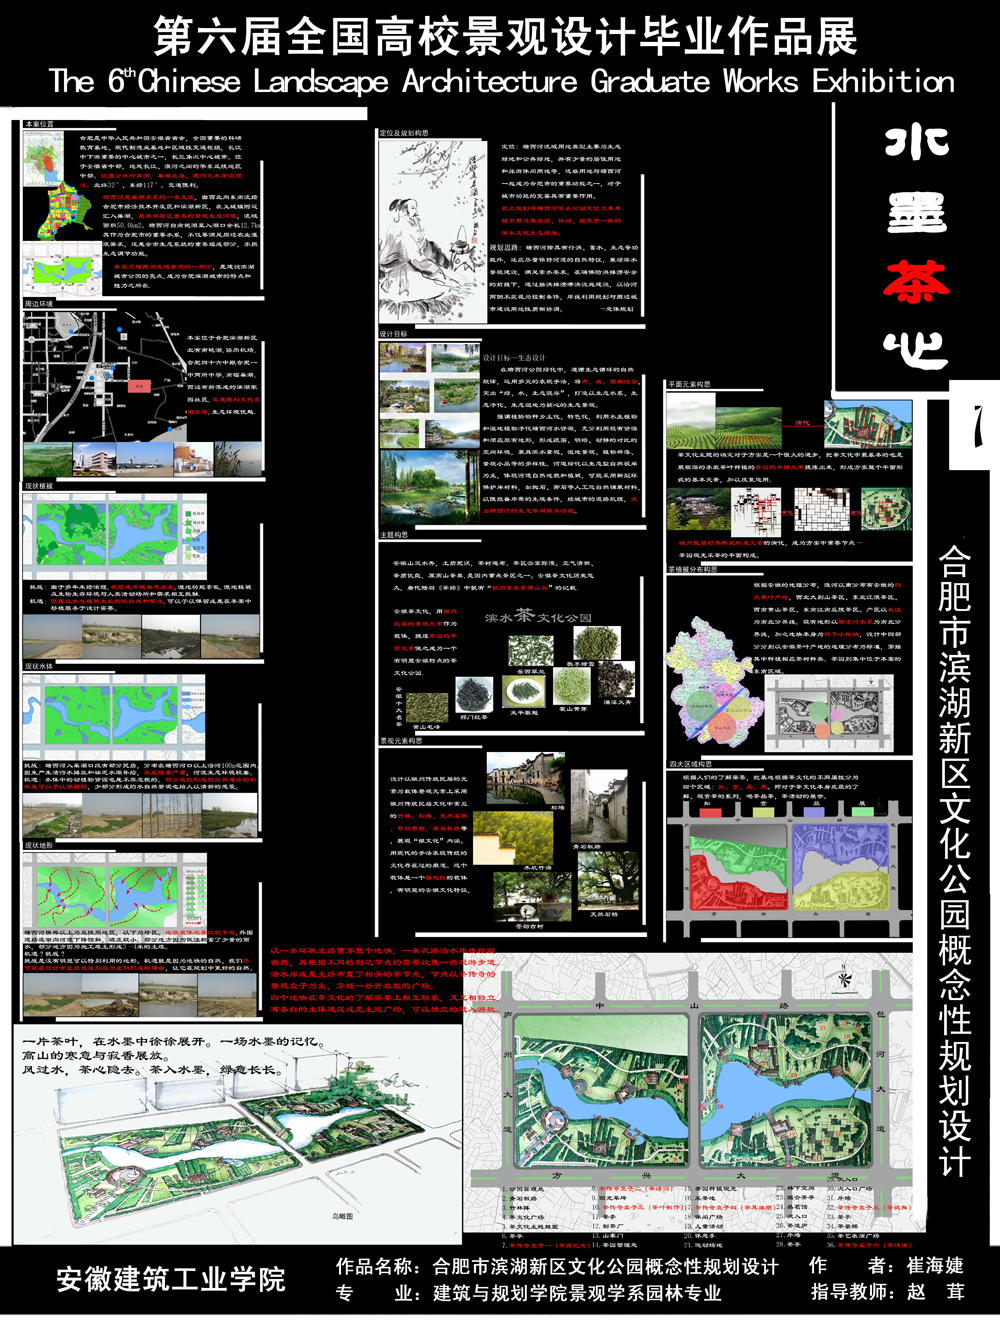 合肥市滨湖新区文化公园概念性规划设计-1